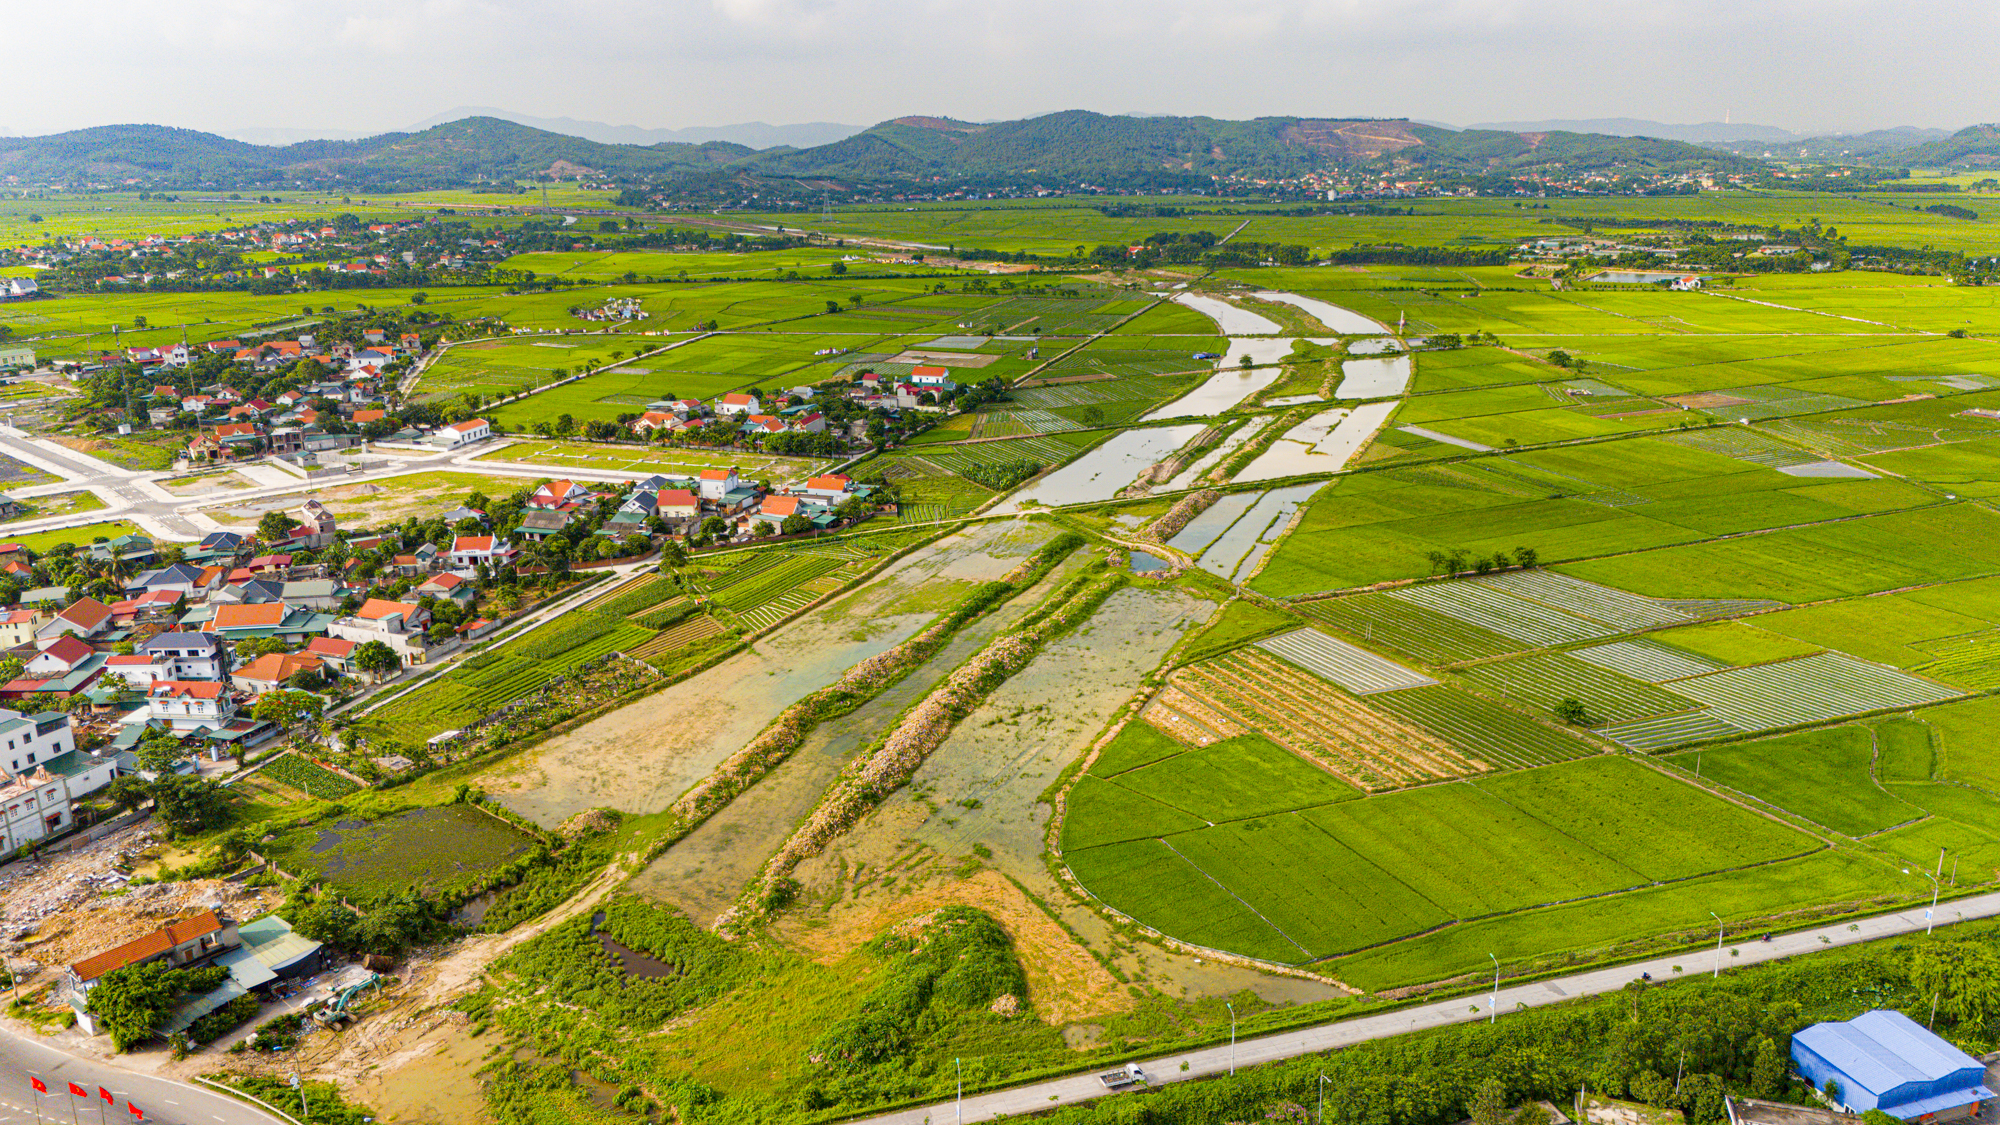 Diện mạo thị xã nằm ở giao điểm tam giác kinh tế Hà Nội - Hải Phòng - Quảng Ninh, có thể đưa tỉnh giáp biên giới trở thành tỉnh có nhiều thành phố nhất- Ảnh 2.